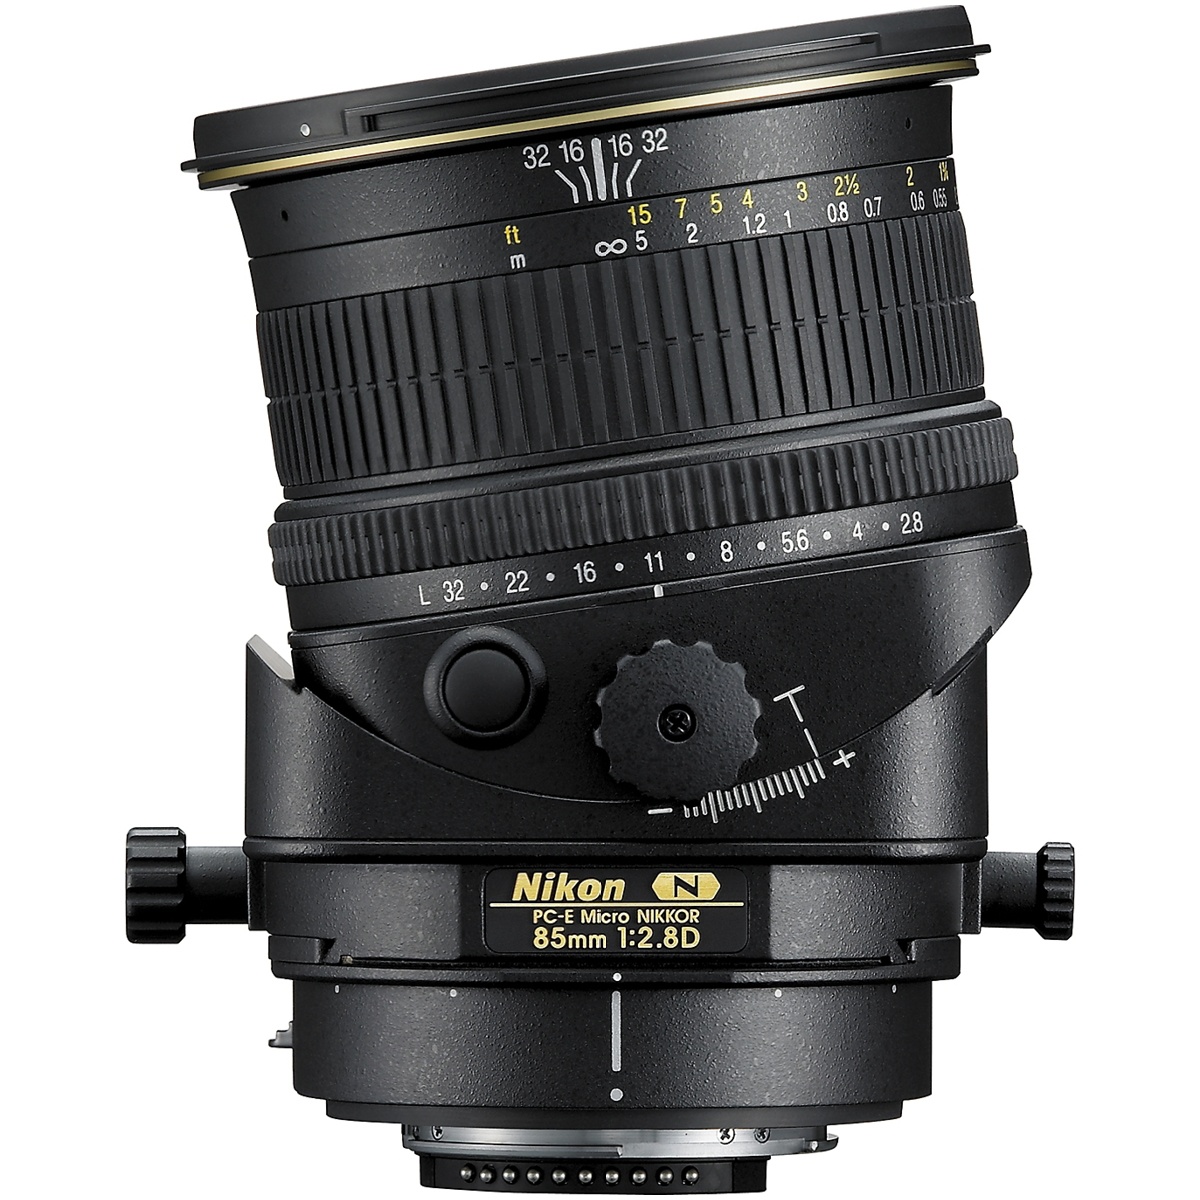 Nikon 85mm 1:2,8 PC-E Micro Nikkor D